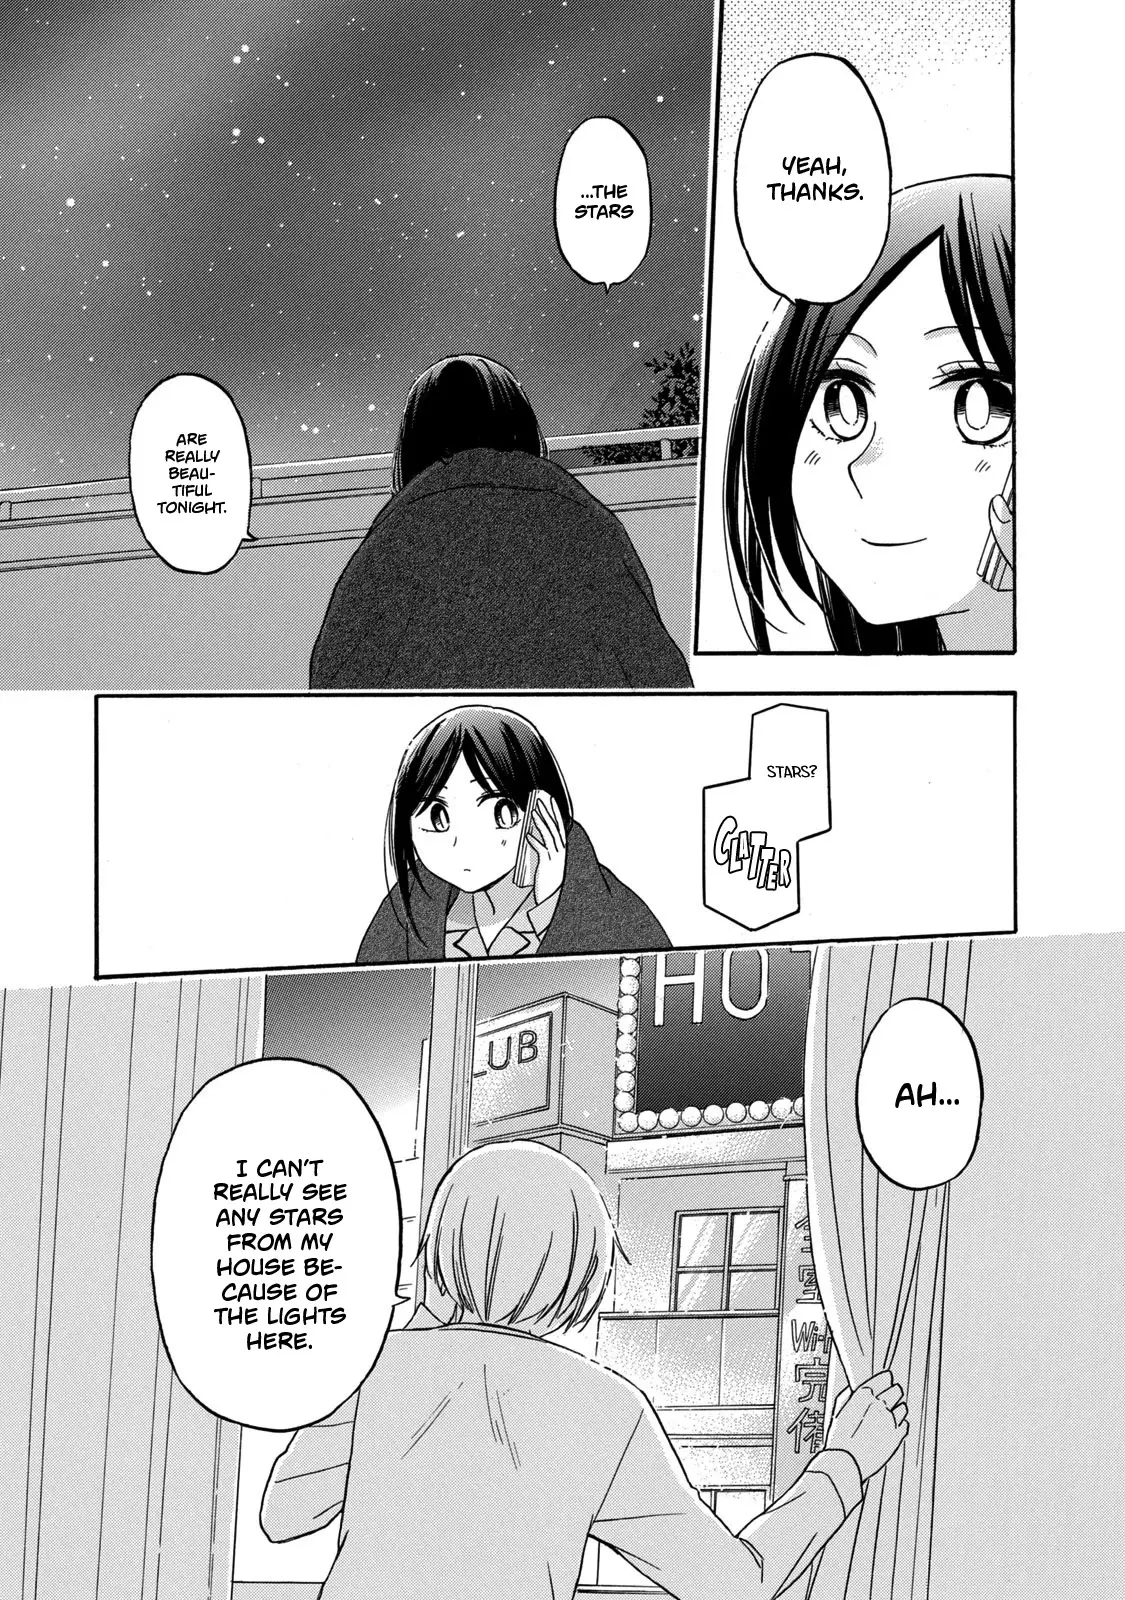 Hanazono And Kazoe's Bizzare After School Rendezvous - 27 page 11-671cb81e